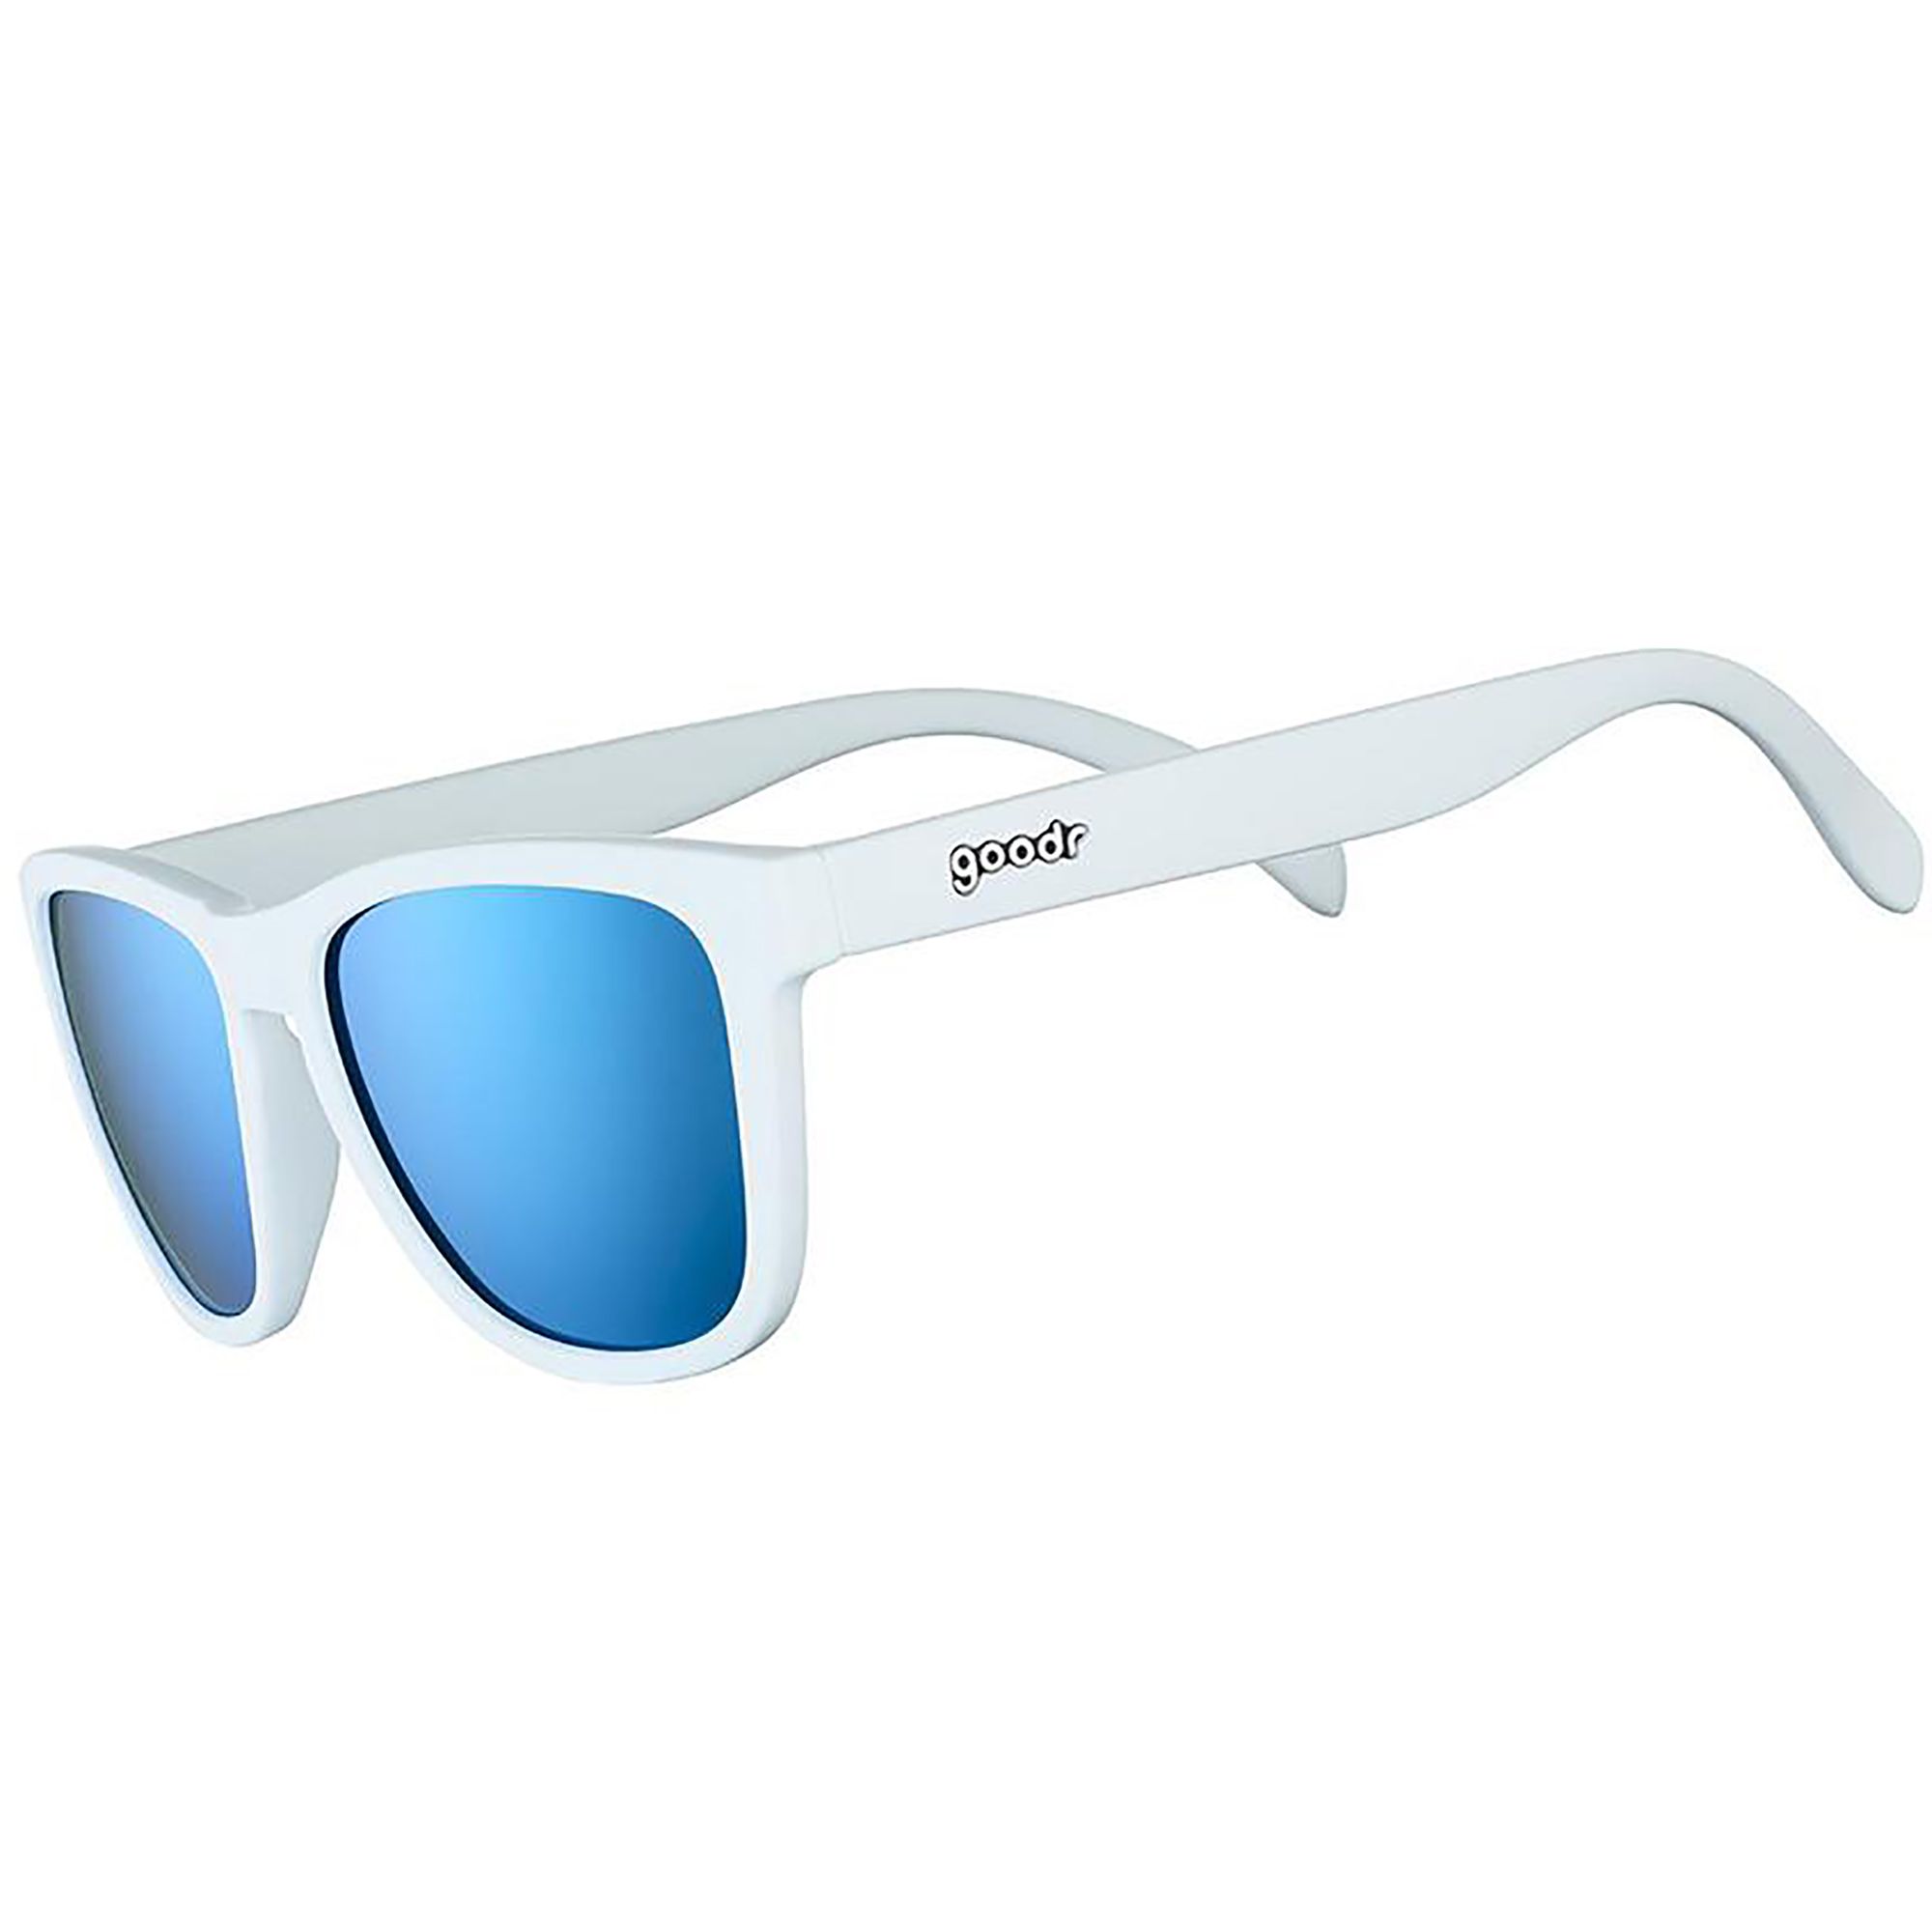 Photos - Sunglasses Goodr Iced By Yetis , Men's, White Frame/Blue Lens 21AVJUCDBYYTS